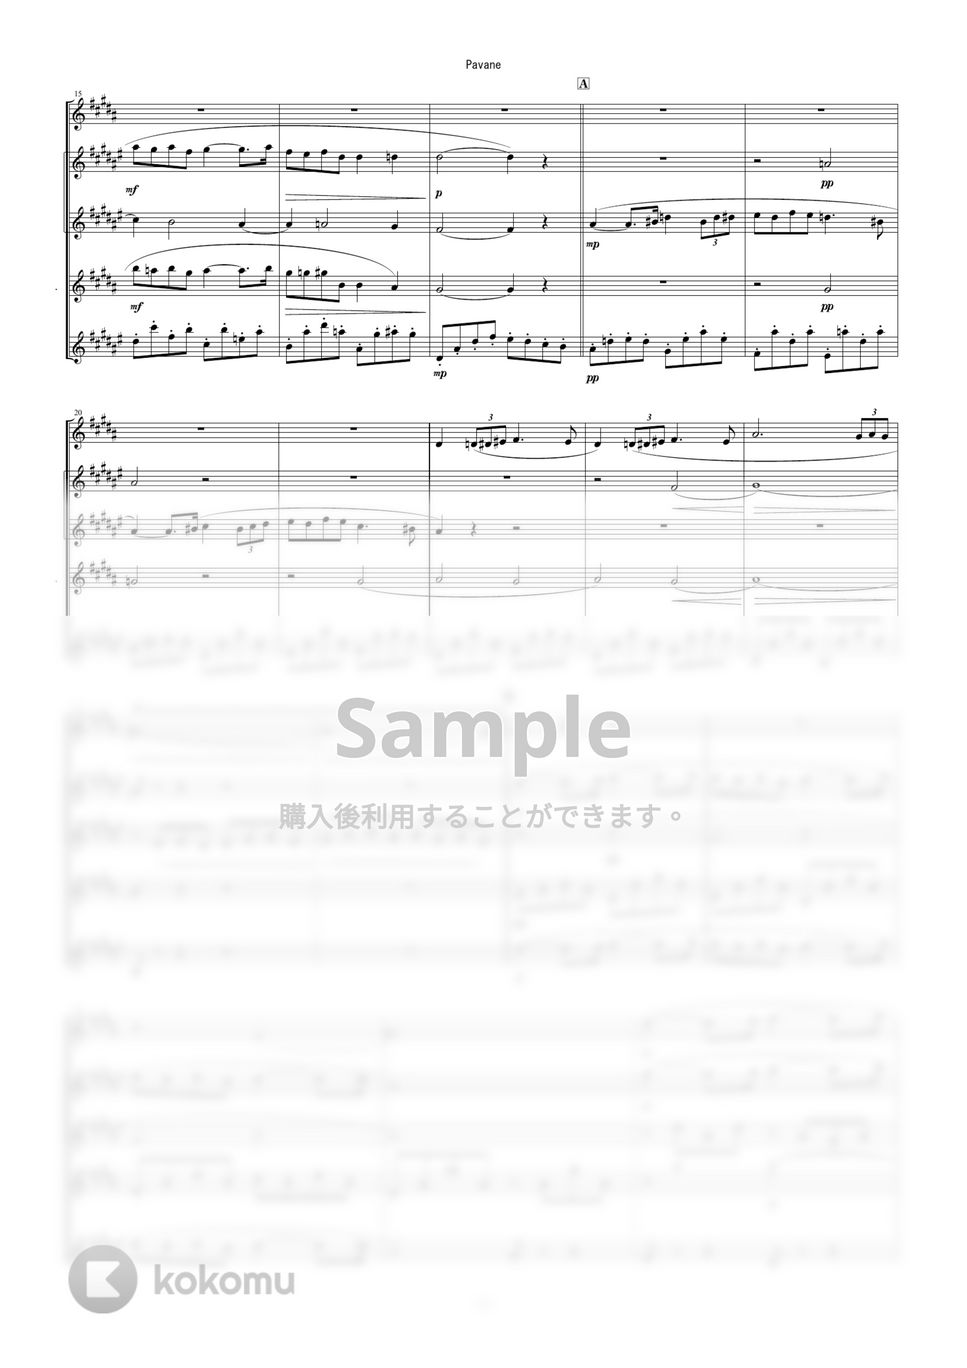 Gabriel Fauré - パヴァーヌ (サックス五重奏 / サキソフォン五重奏 / フォーレ / クラシック) by Zoe